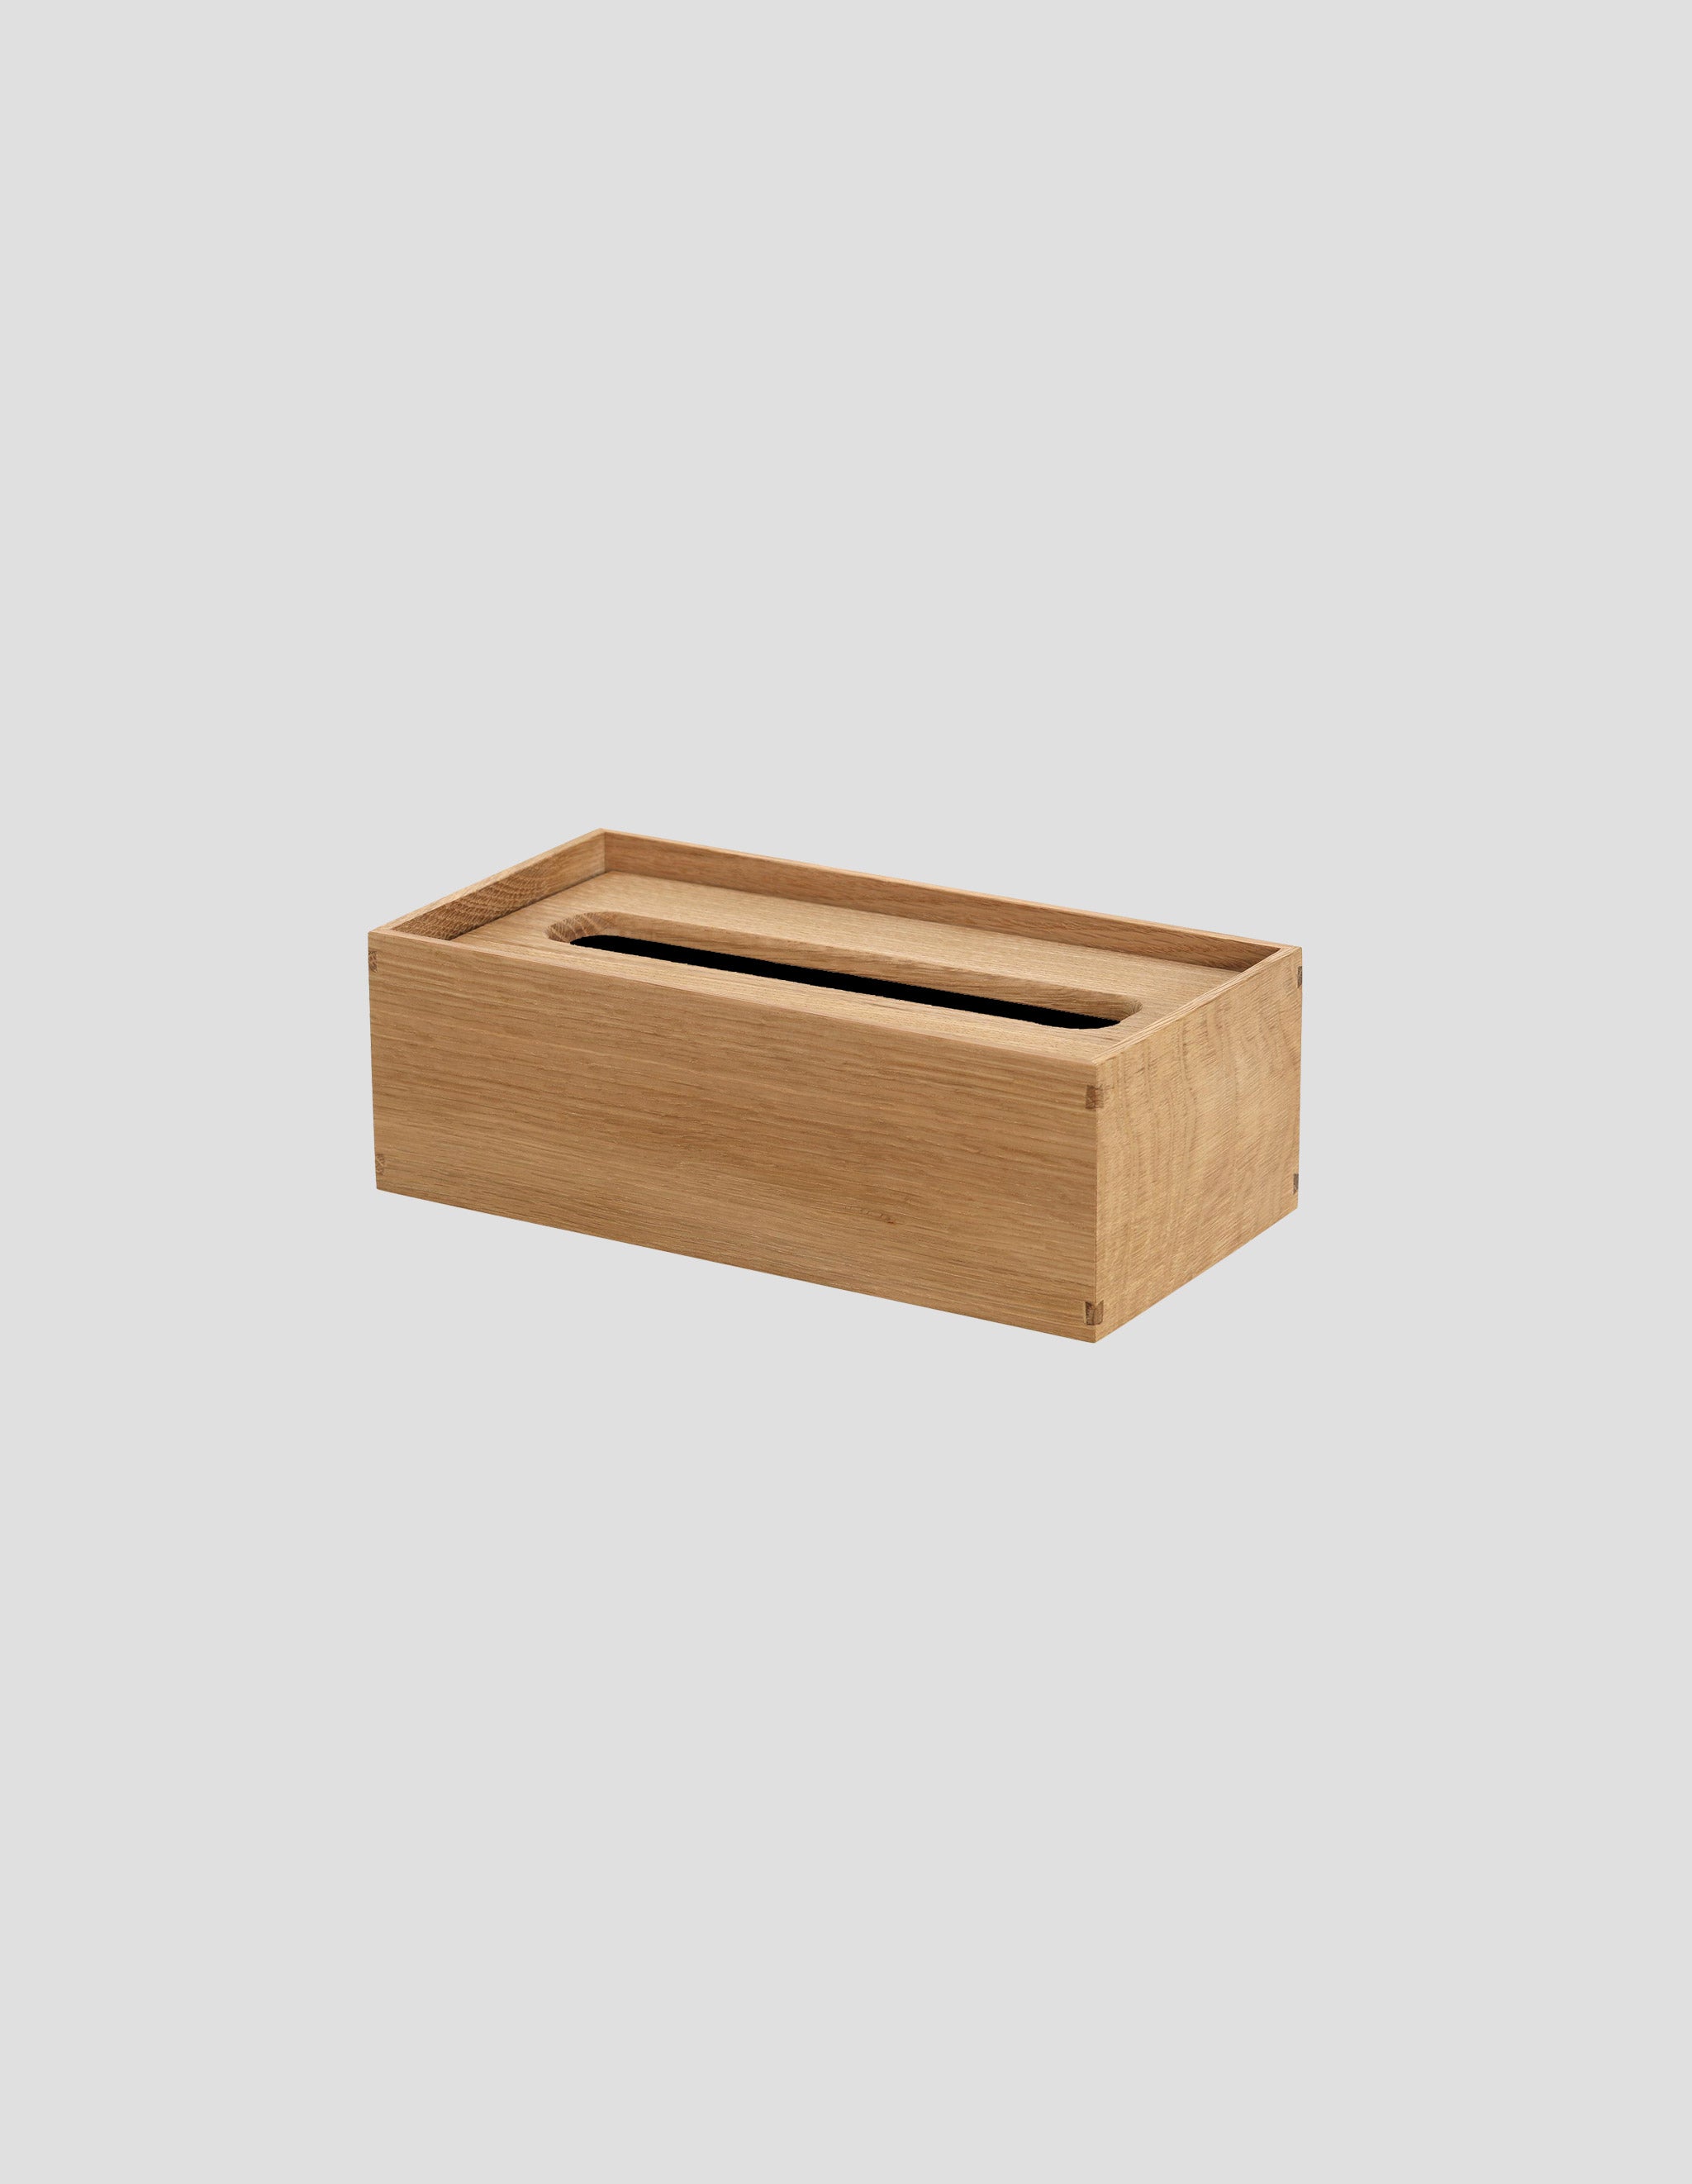 Taschentuch-Box